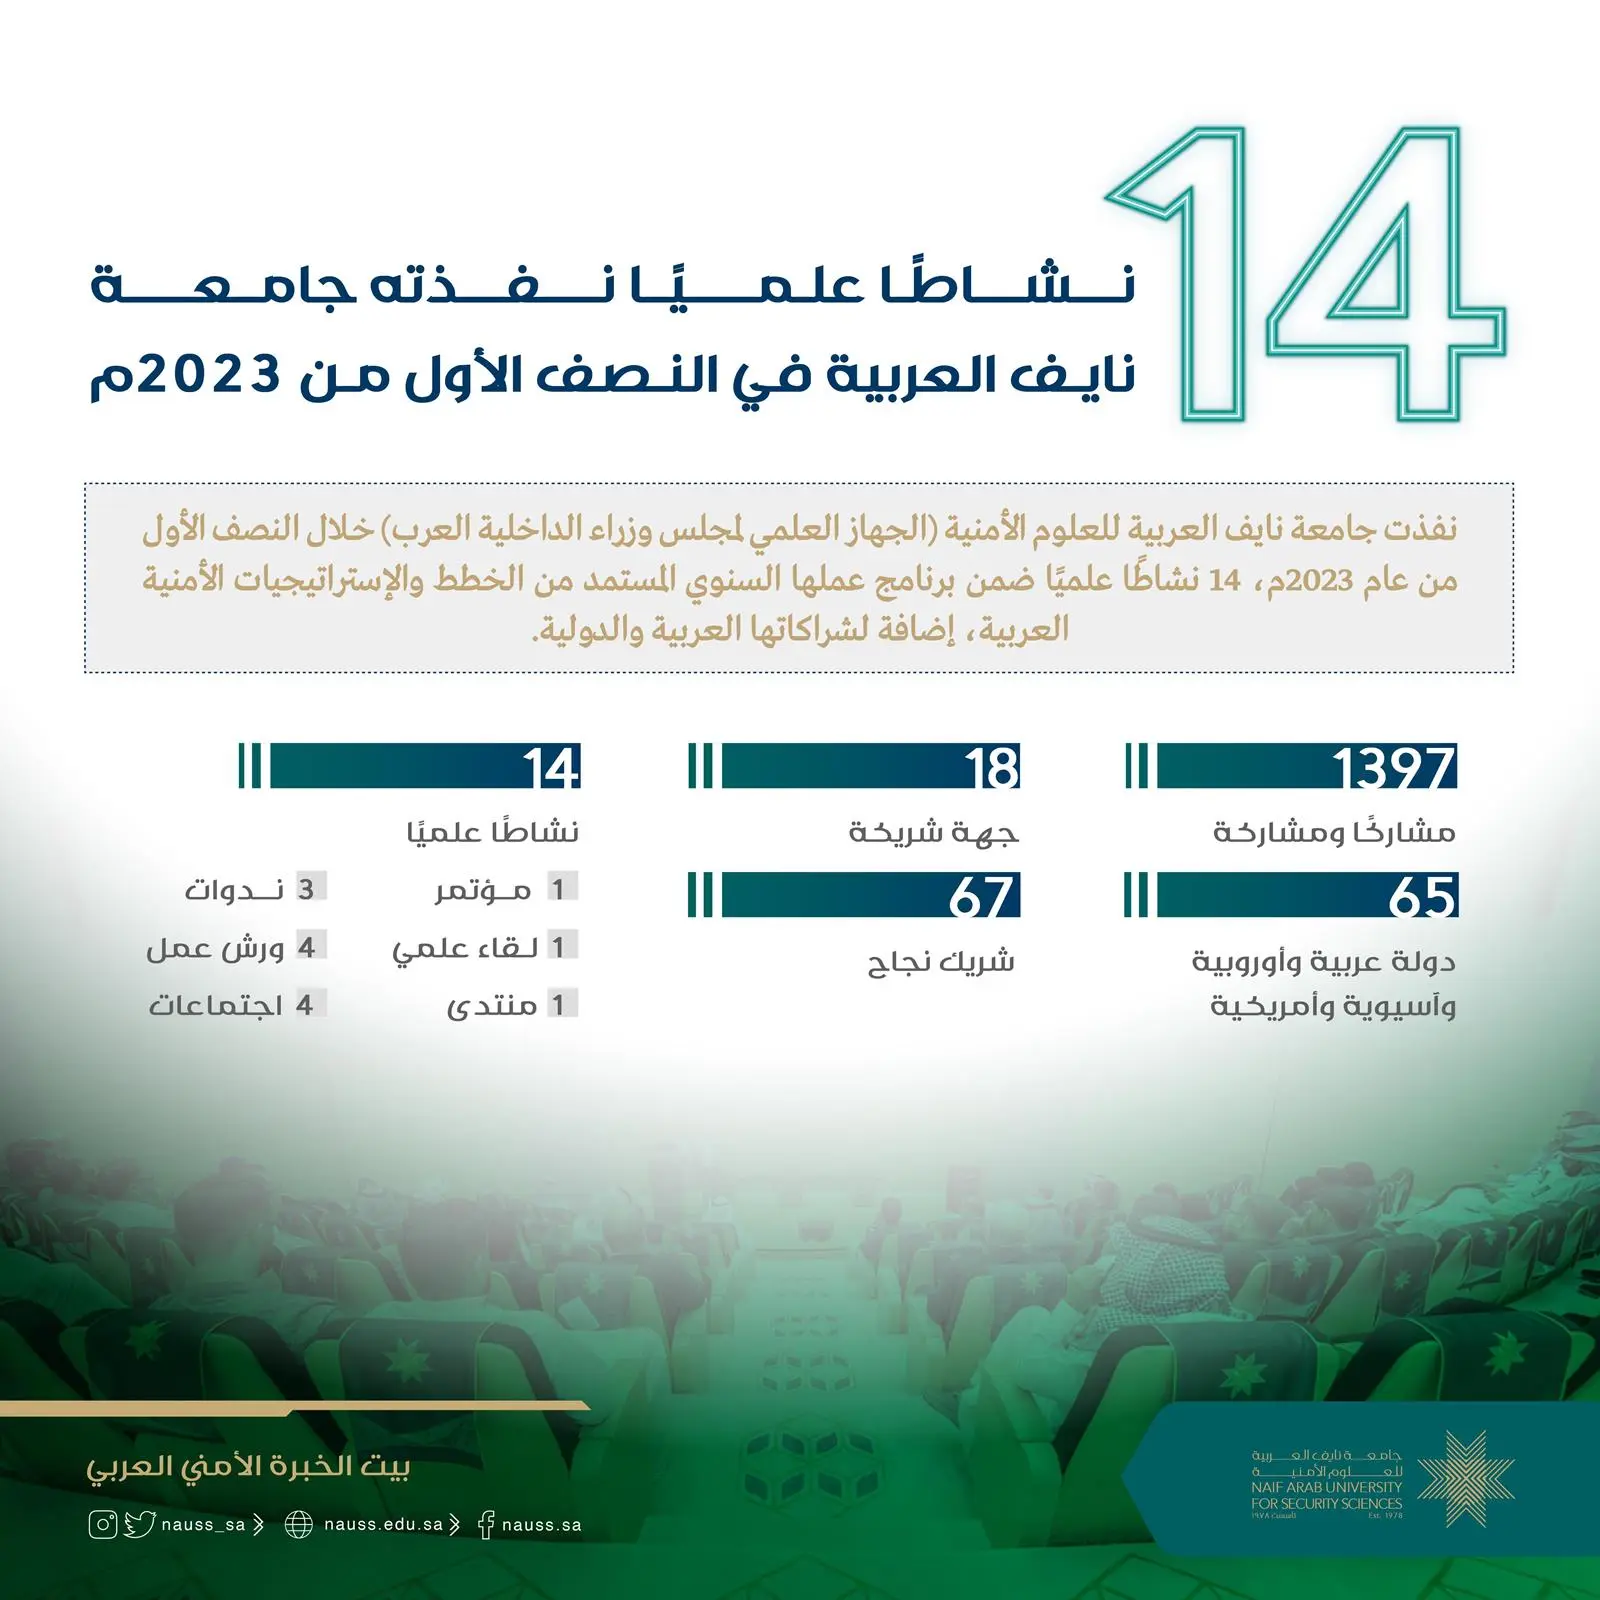 جامعة نايف العربية تنفذ 14 نشاطًا علميًا في المجالات الأمنية والعدلية في النصف الأول من 2023